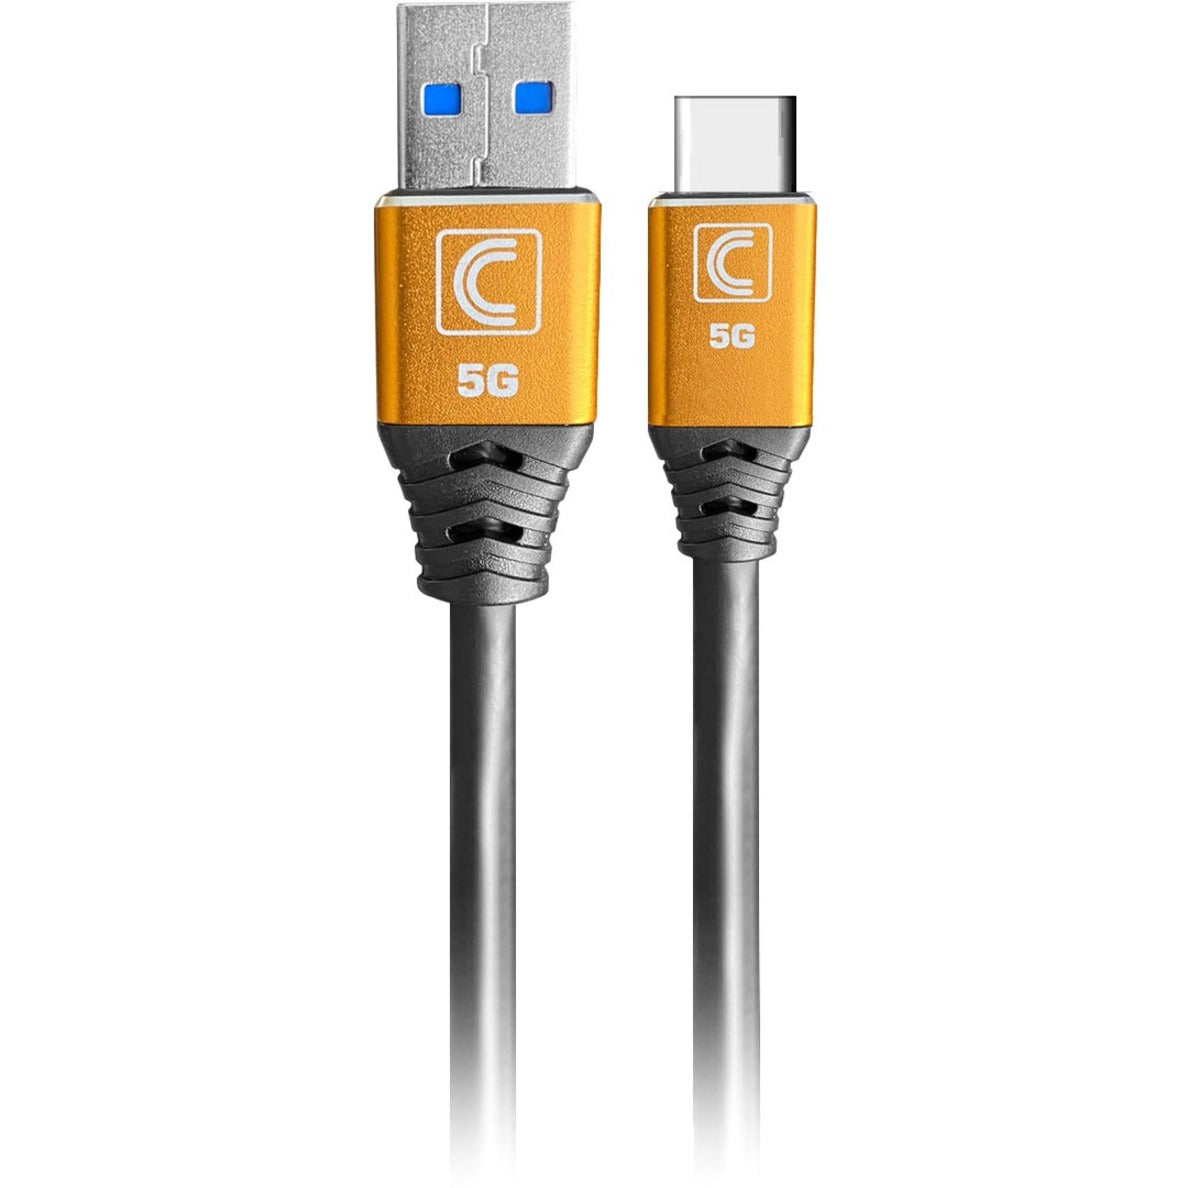 كابل USB3-AC-15SP Pro AV/IT خاصية سلسلة اختصاصي USB 3.0 (3.2 جنرال1) 5G نوع A ذكر إلى نوع C ذكر 15 قدمًا، إغاثة التوتر، قابل للانحناء، مع ثلاث طبقات درع العلامة التجارية:  Comprehensive